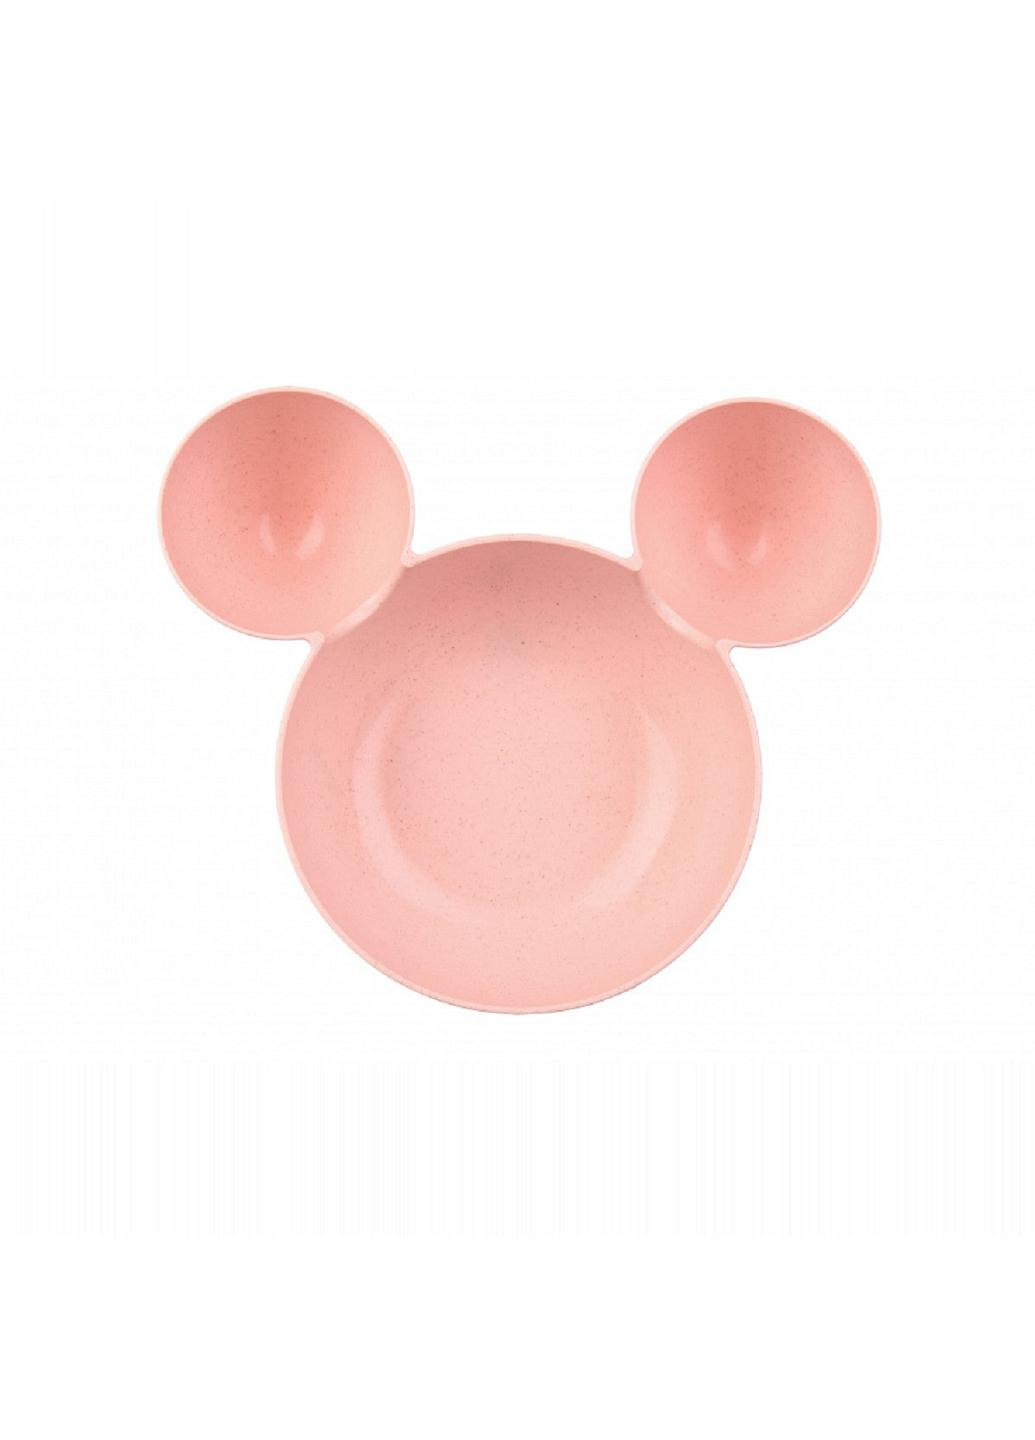 Детская тарелка с ушками и приборами из экопластика, розовая (68-550) No Brand (253719266)